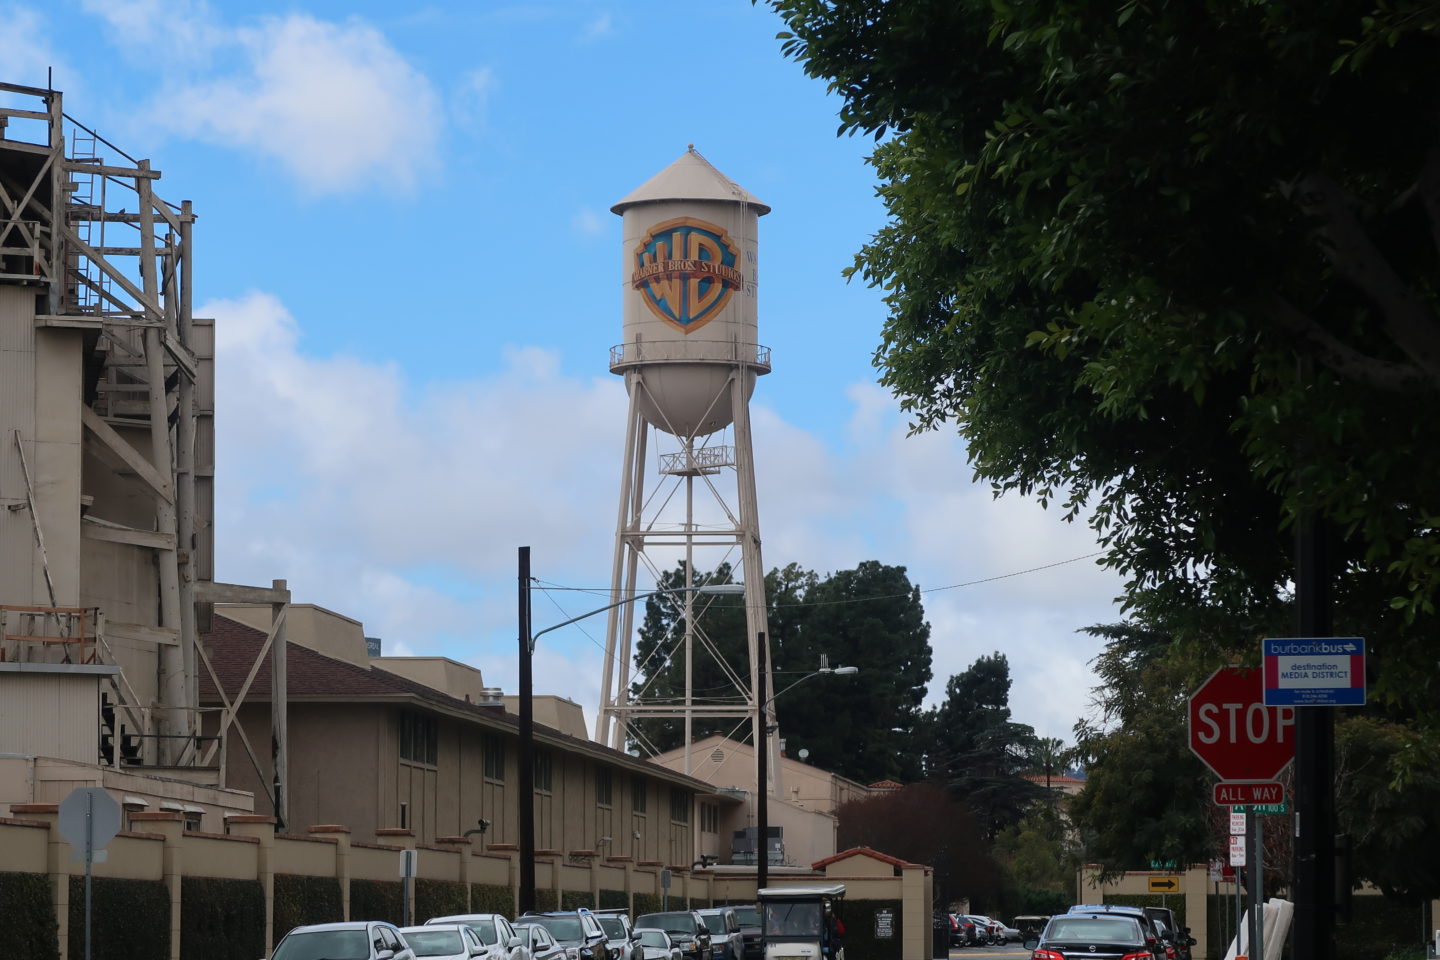 Warner Bros Studio Tour Hollywood. Water tank